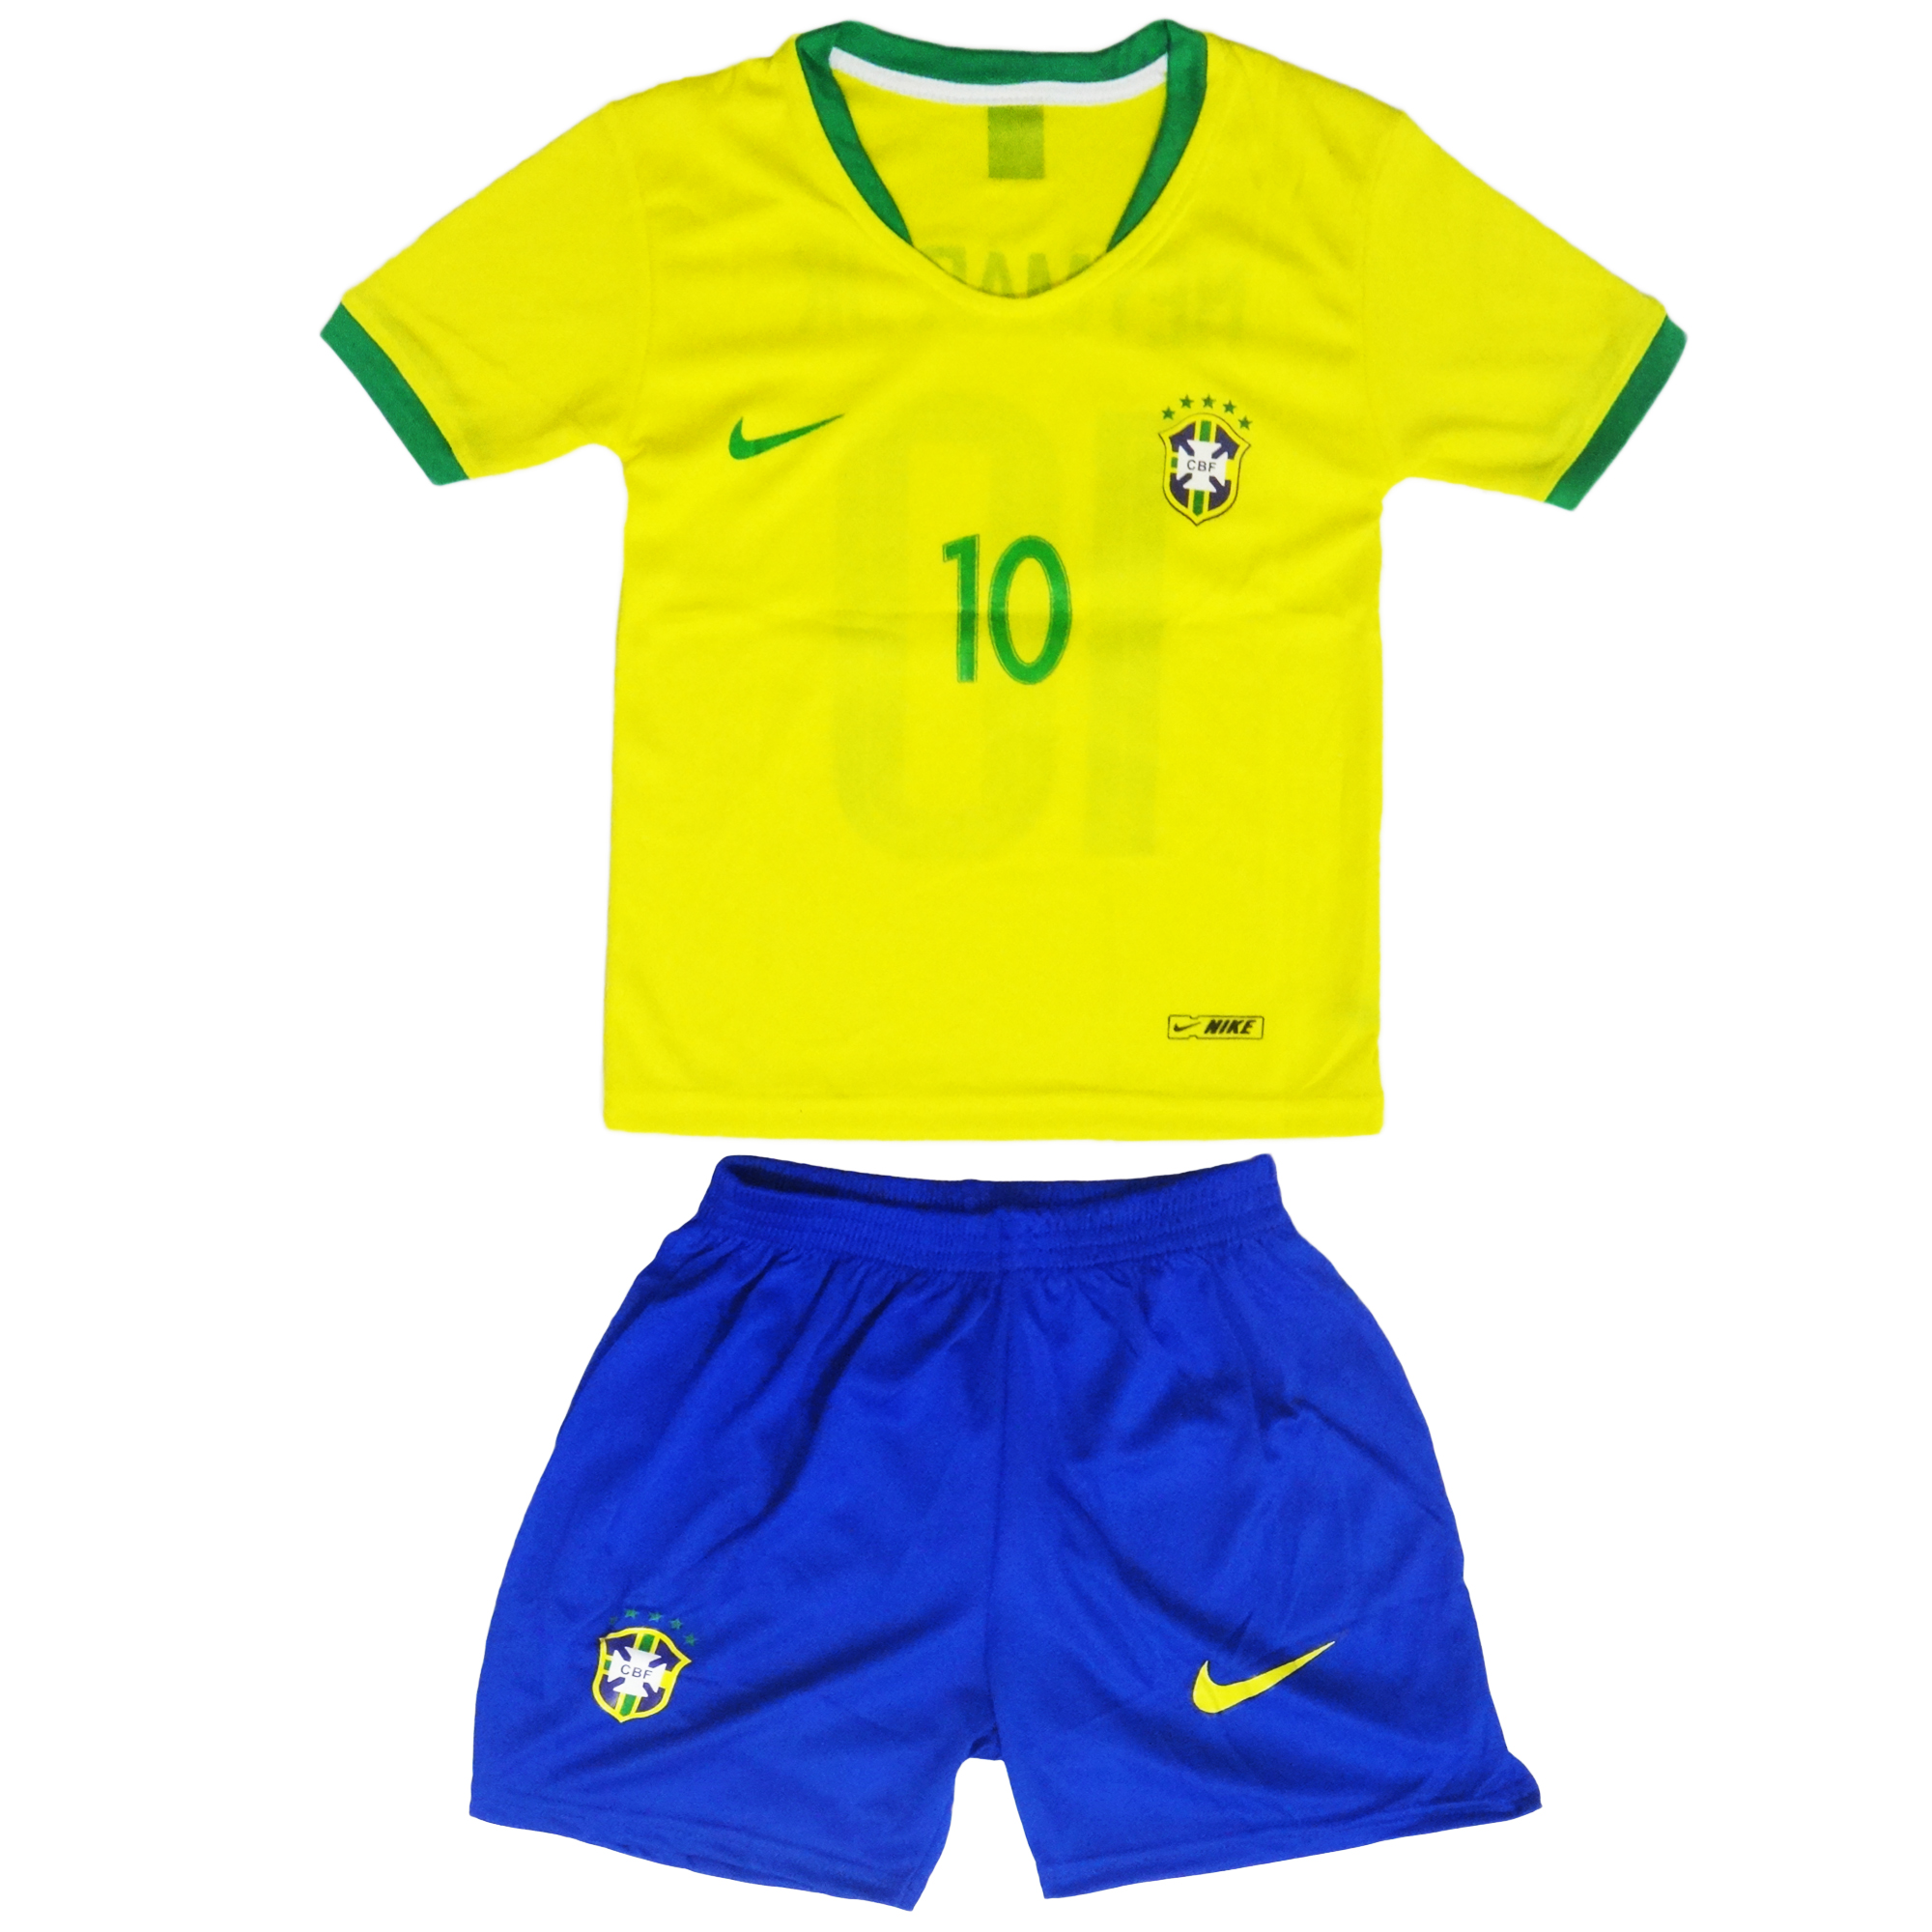 ست پیراهن و شورت ورزشی پسرانه طرح تیم ملی برزیل کد 2018